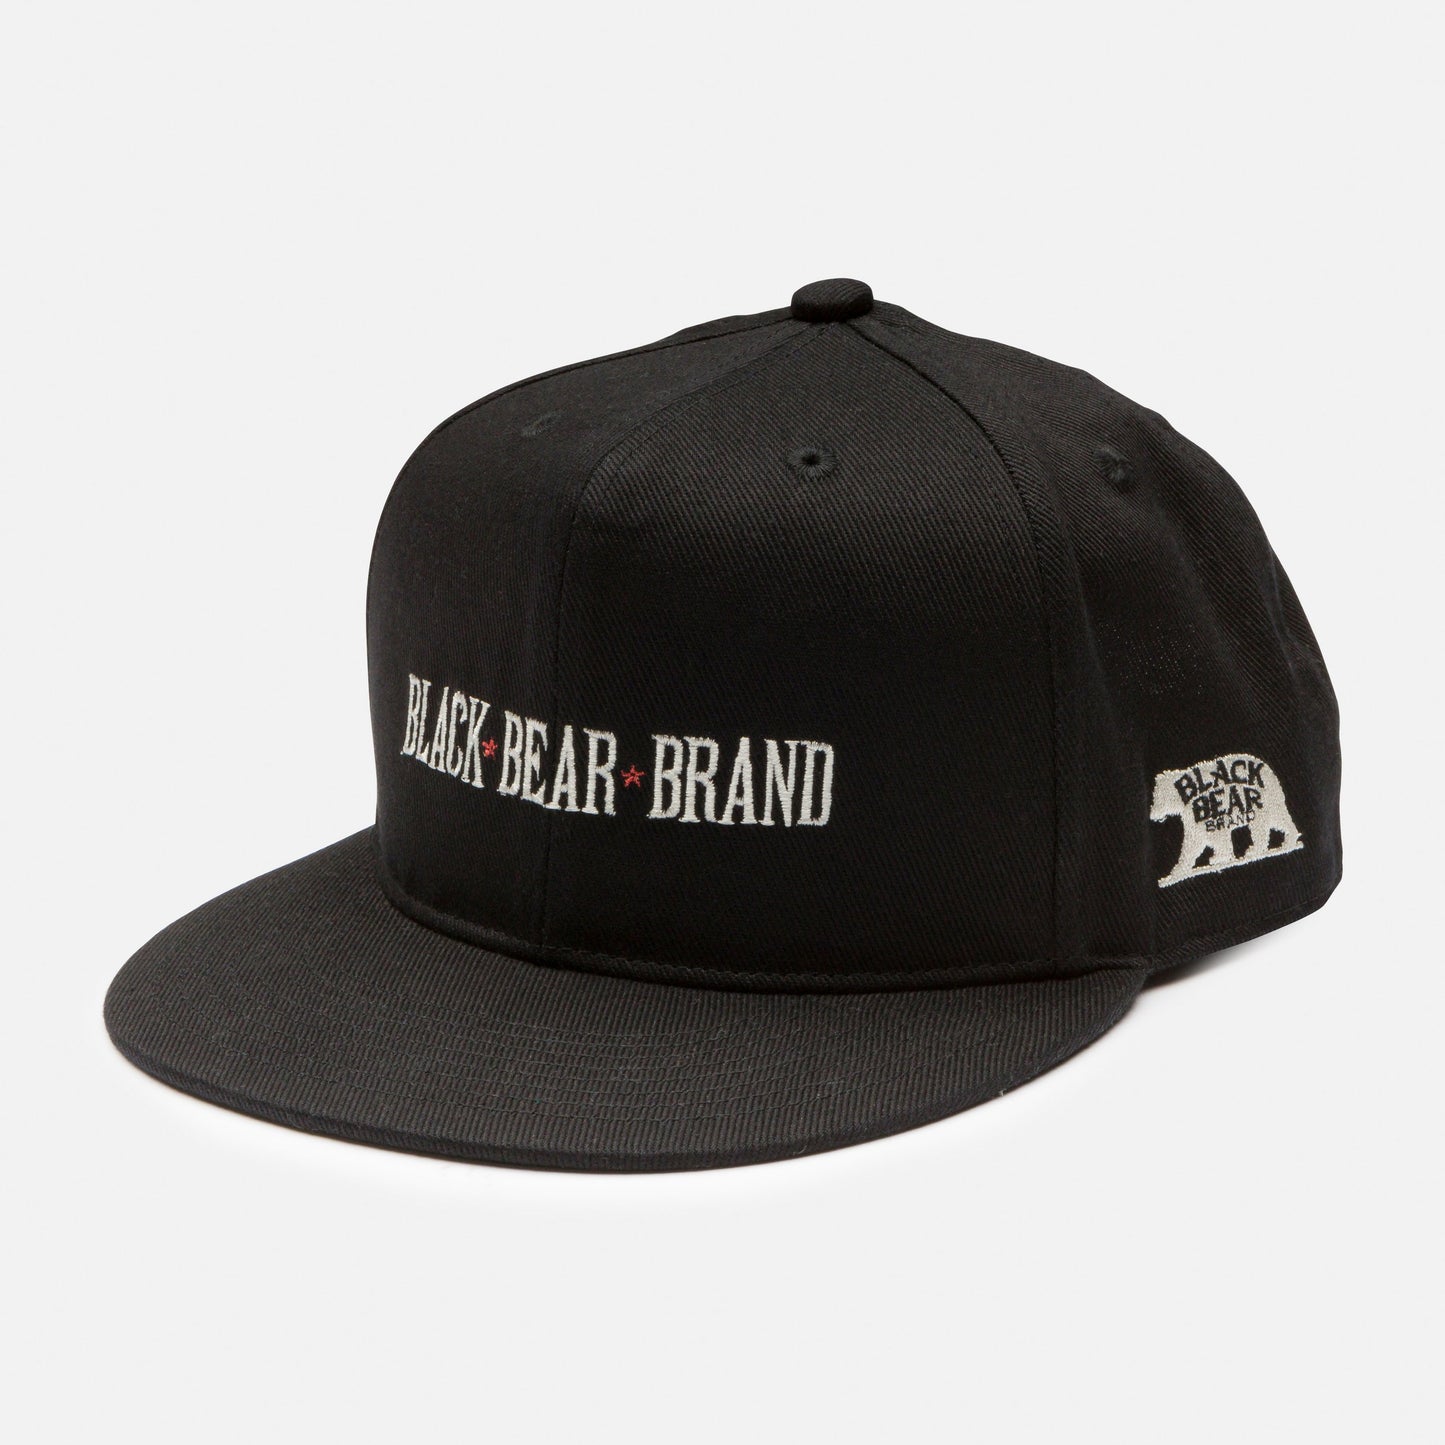 Black Bear Brand - BLACK Made in Japan BASEBALL Hat